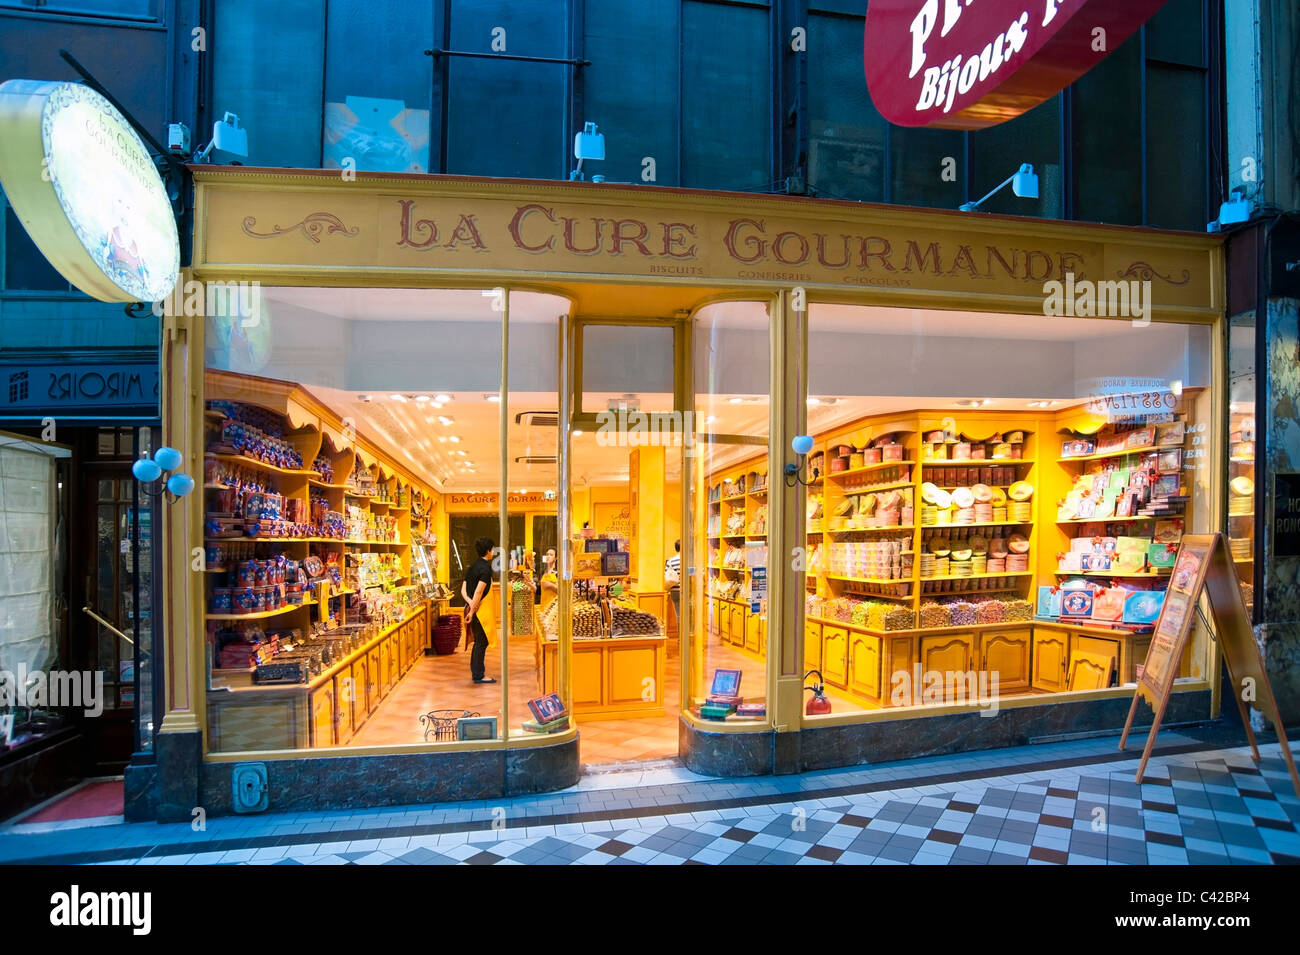 La Cure Gourmande tienda en las galerías des Panoramas en París Foto de stock